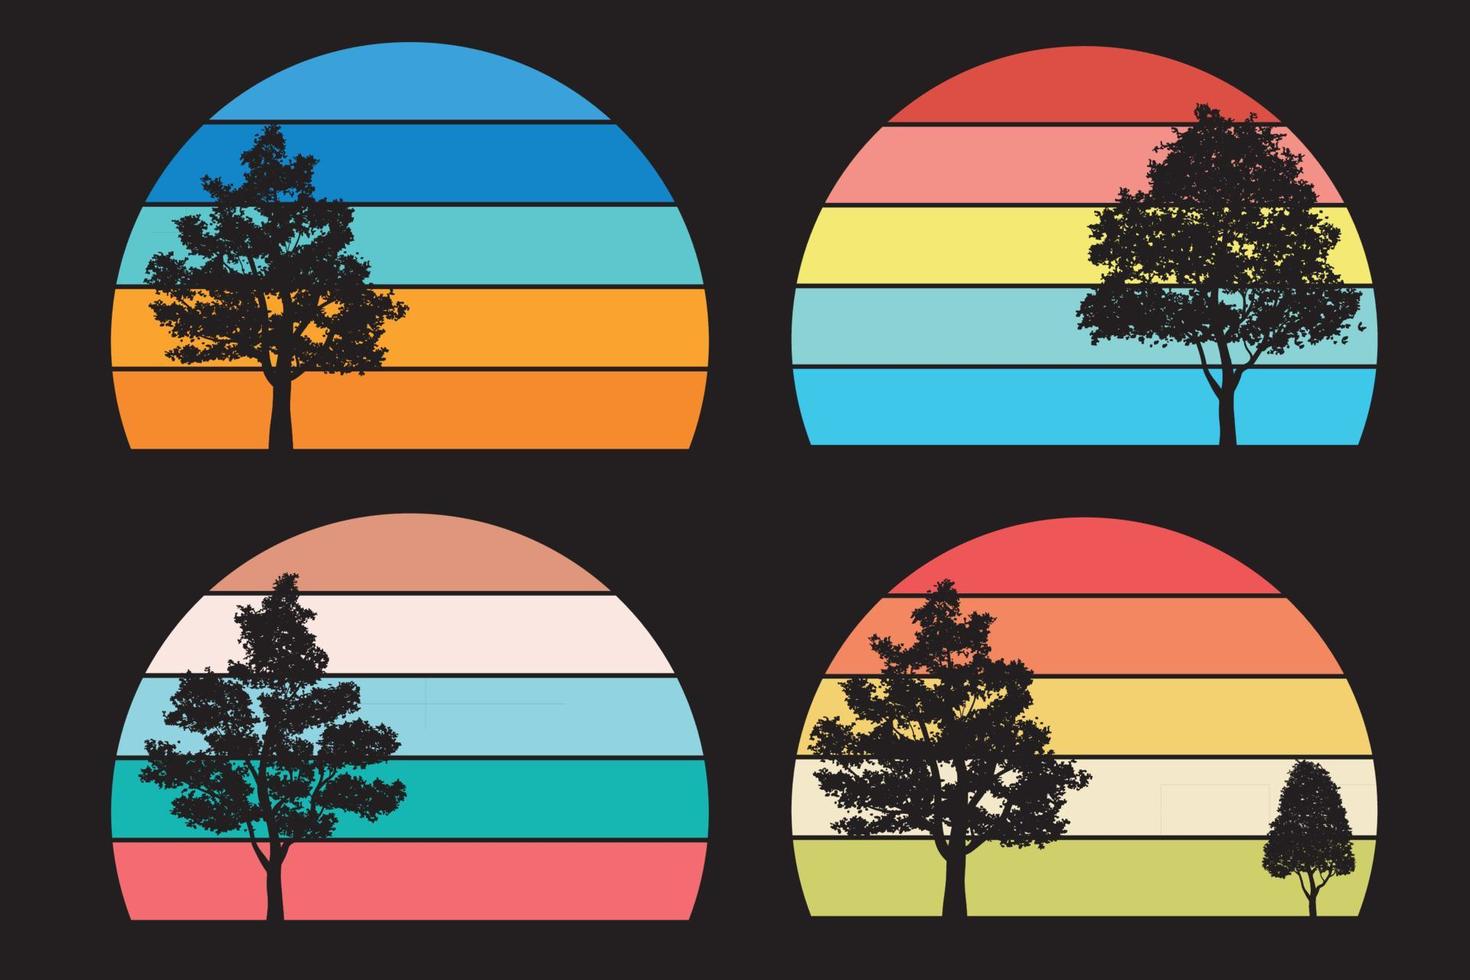 coleção do sol retrô para banner ou impressão. Círculos listrados retrowave estilo anos 80 com montanhas e árvores florestais, vetor livre